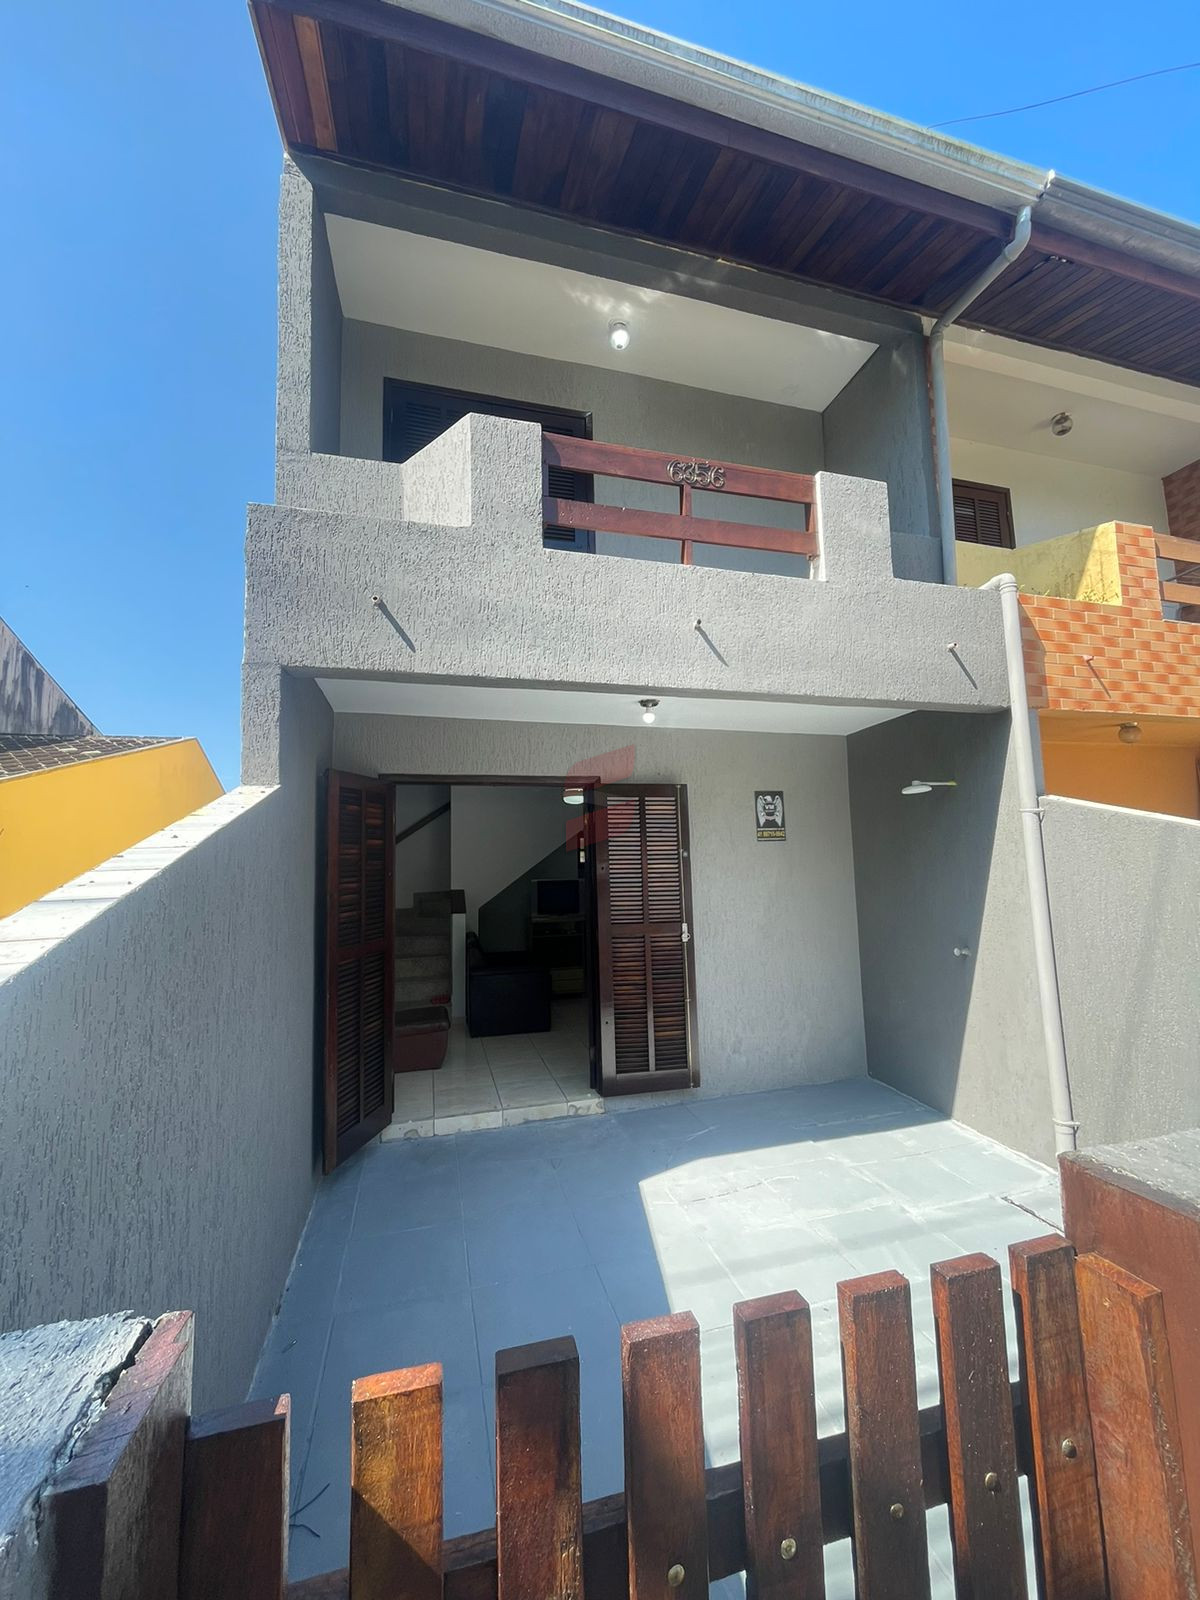 SOBRADO com 2 dormitórios à venda com 202.8m² por R$ 409.000,00 no bairro Balneário Betaras - MATINHOS / PR